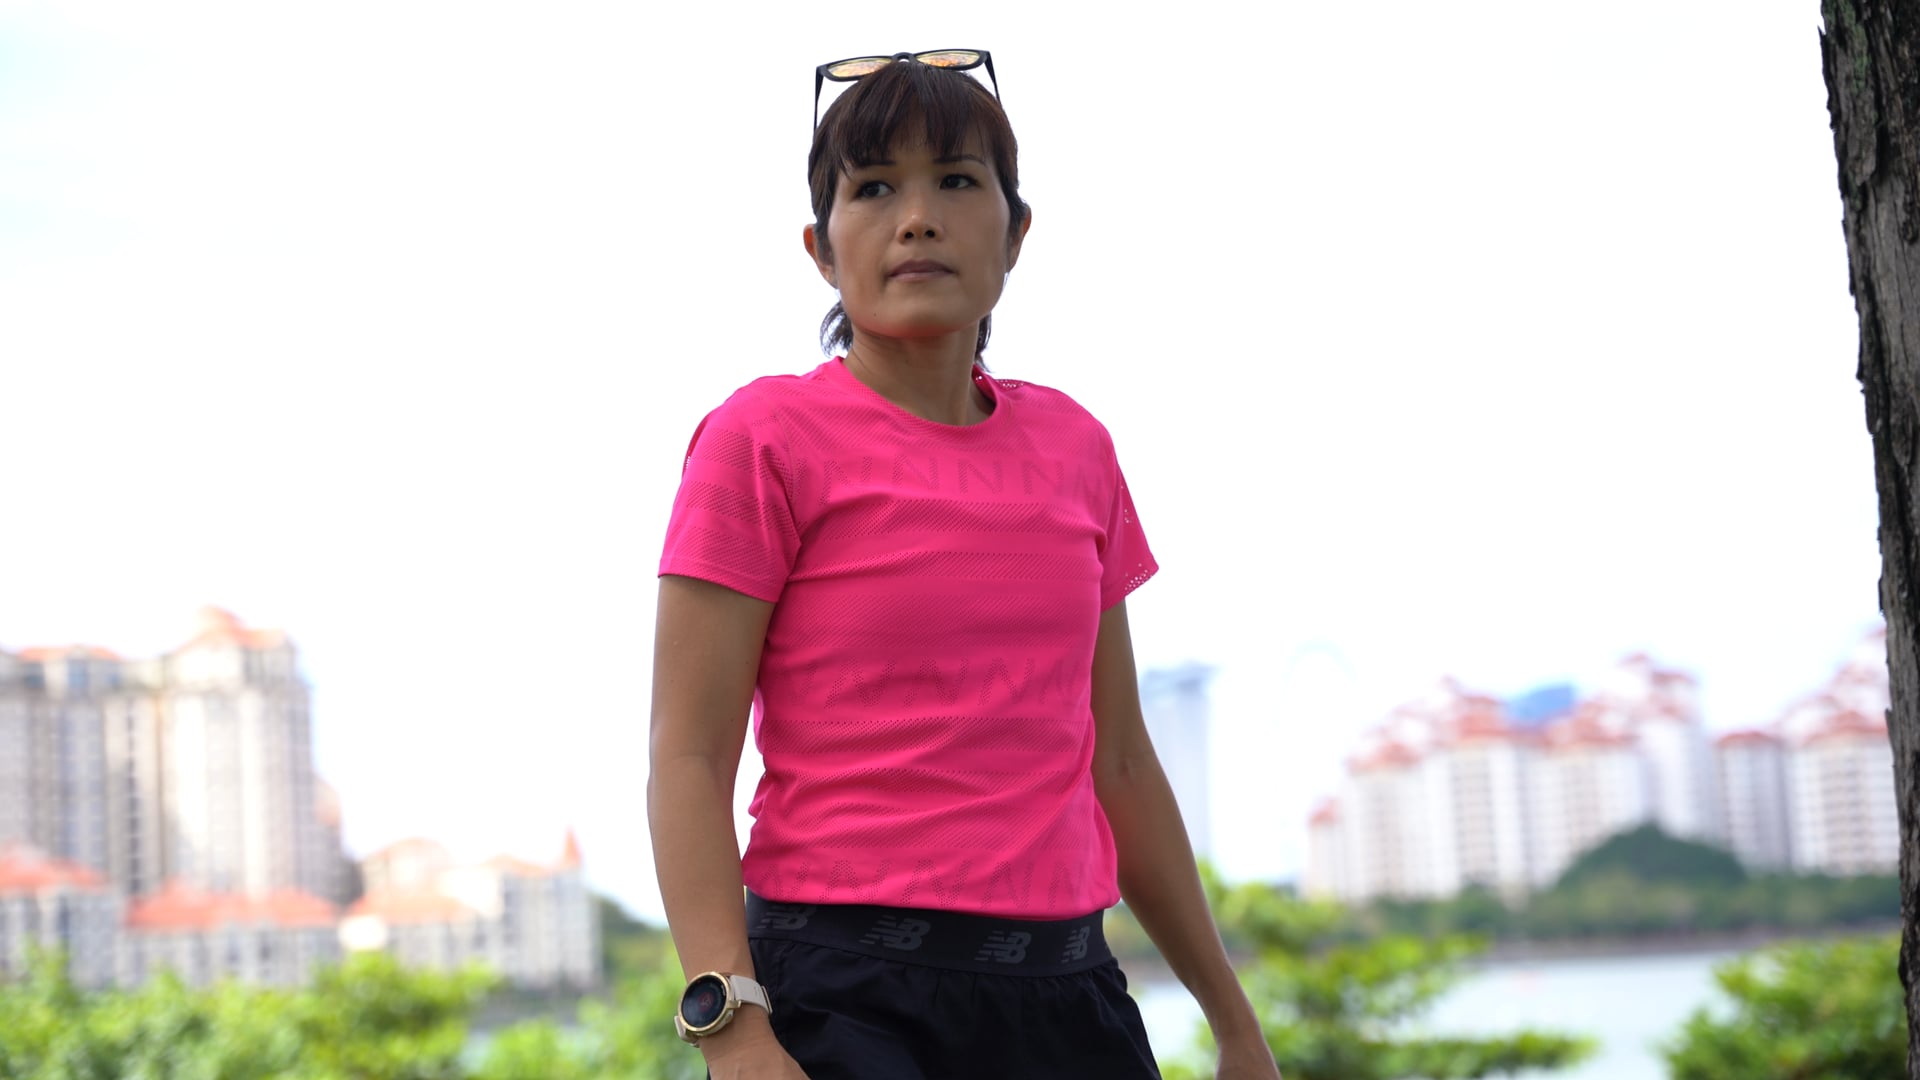 Yvonne Chee: Singapore Marathon Mom with a Warrior Spirit